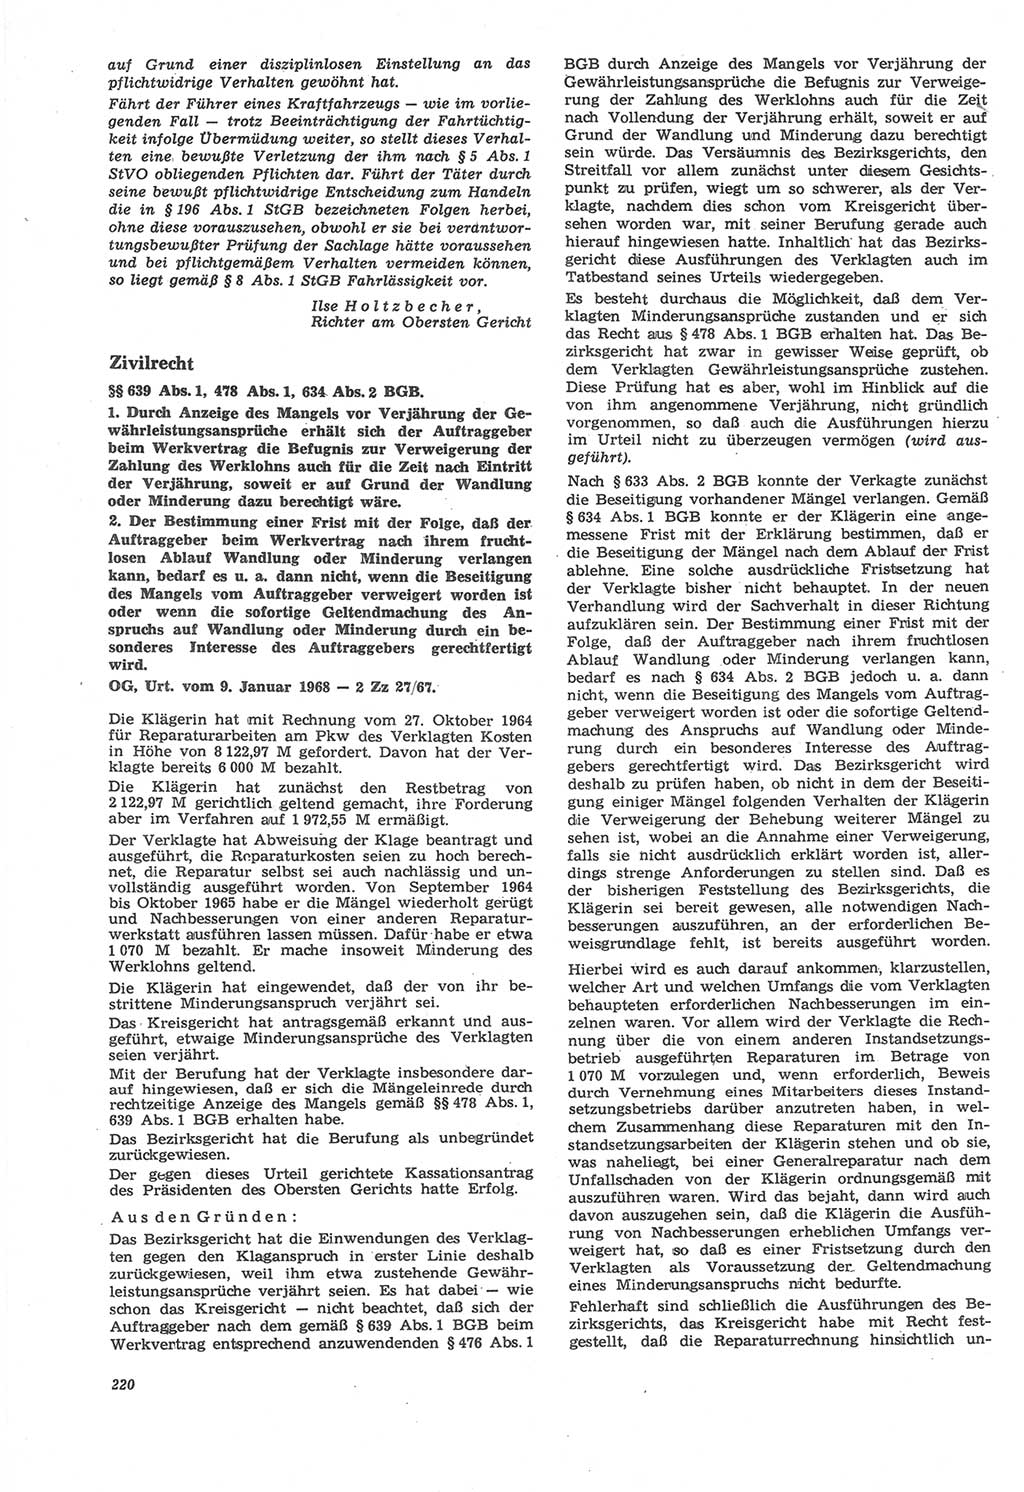 Neue Justiz (NJ), Zeitschrift für Recht und Rechtswissenschaft [Deutsche Demokratische Republik (DDR)], 22. Jahrgang 1968, Seite 220 (NJ DDR 1968, S. 220)